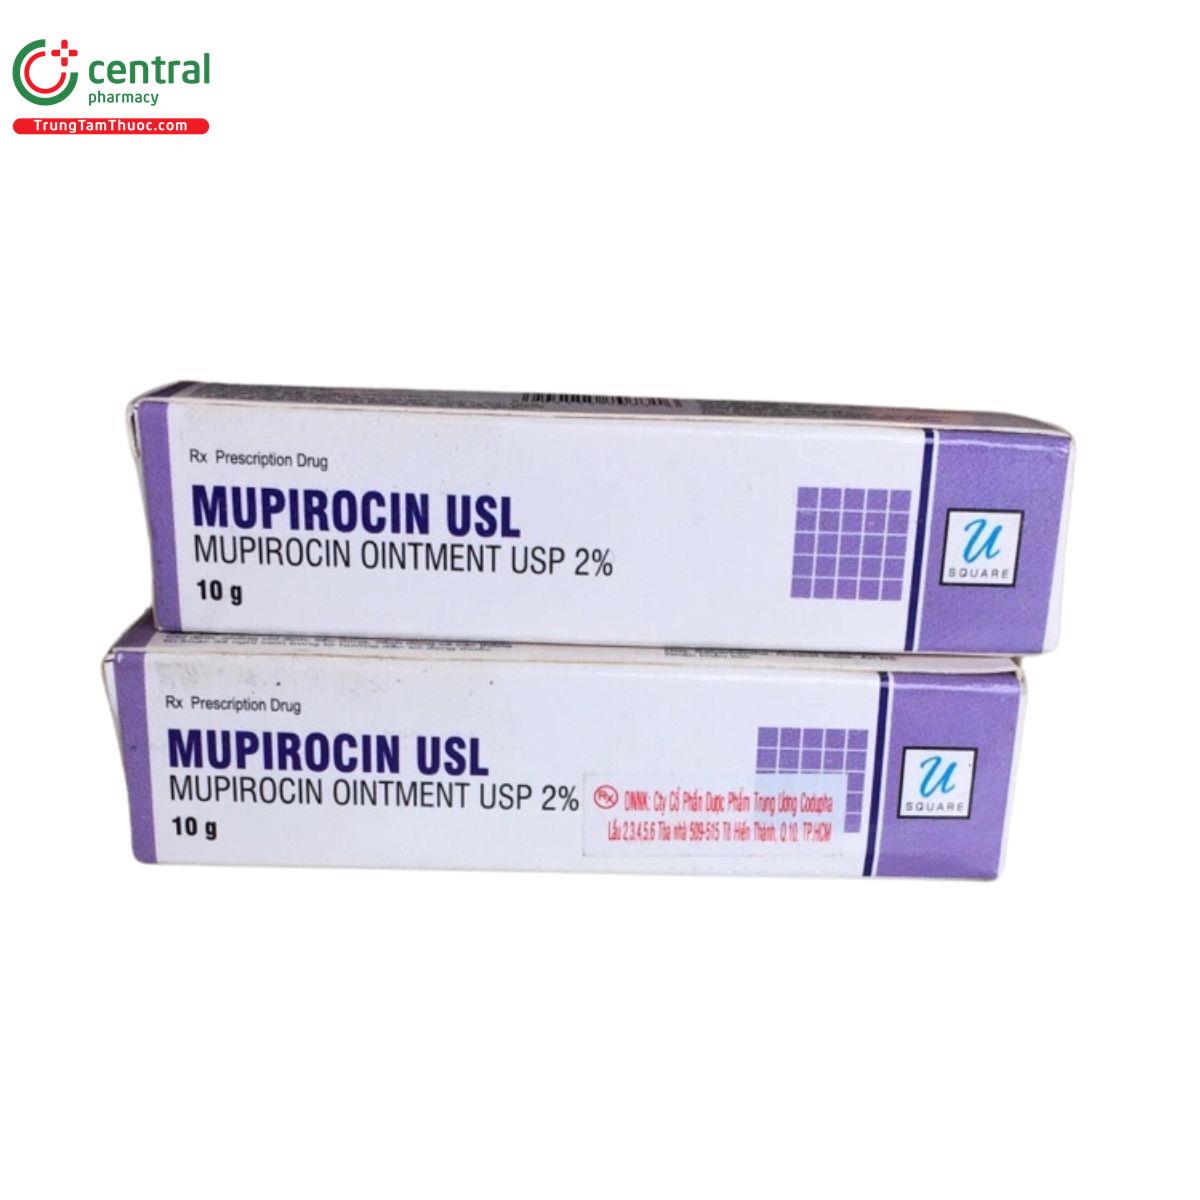 thuoc mupirocin usl 3 U8202